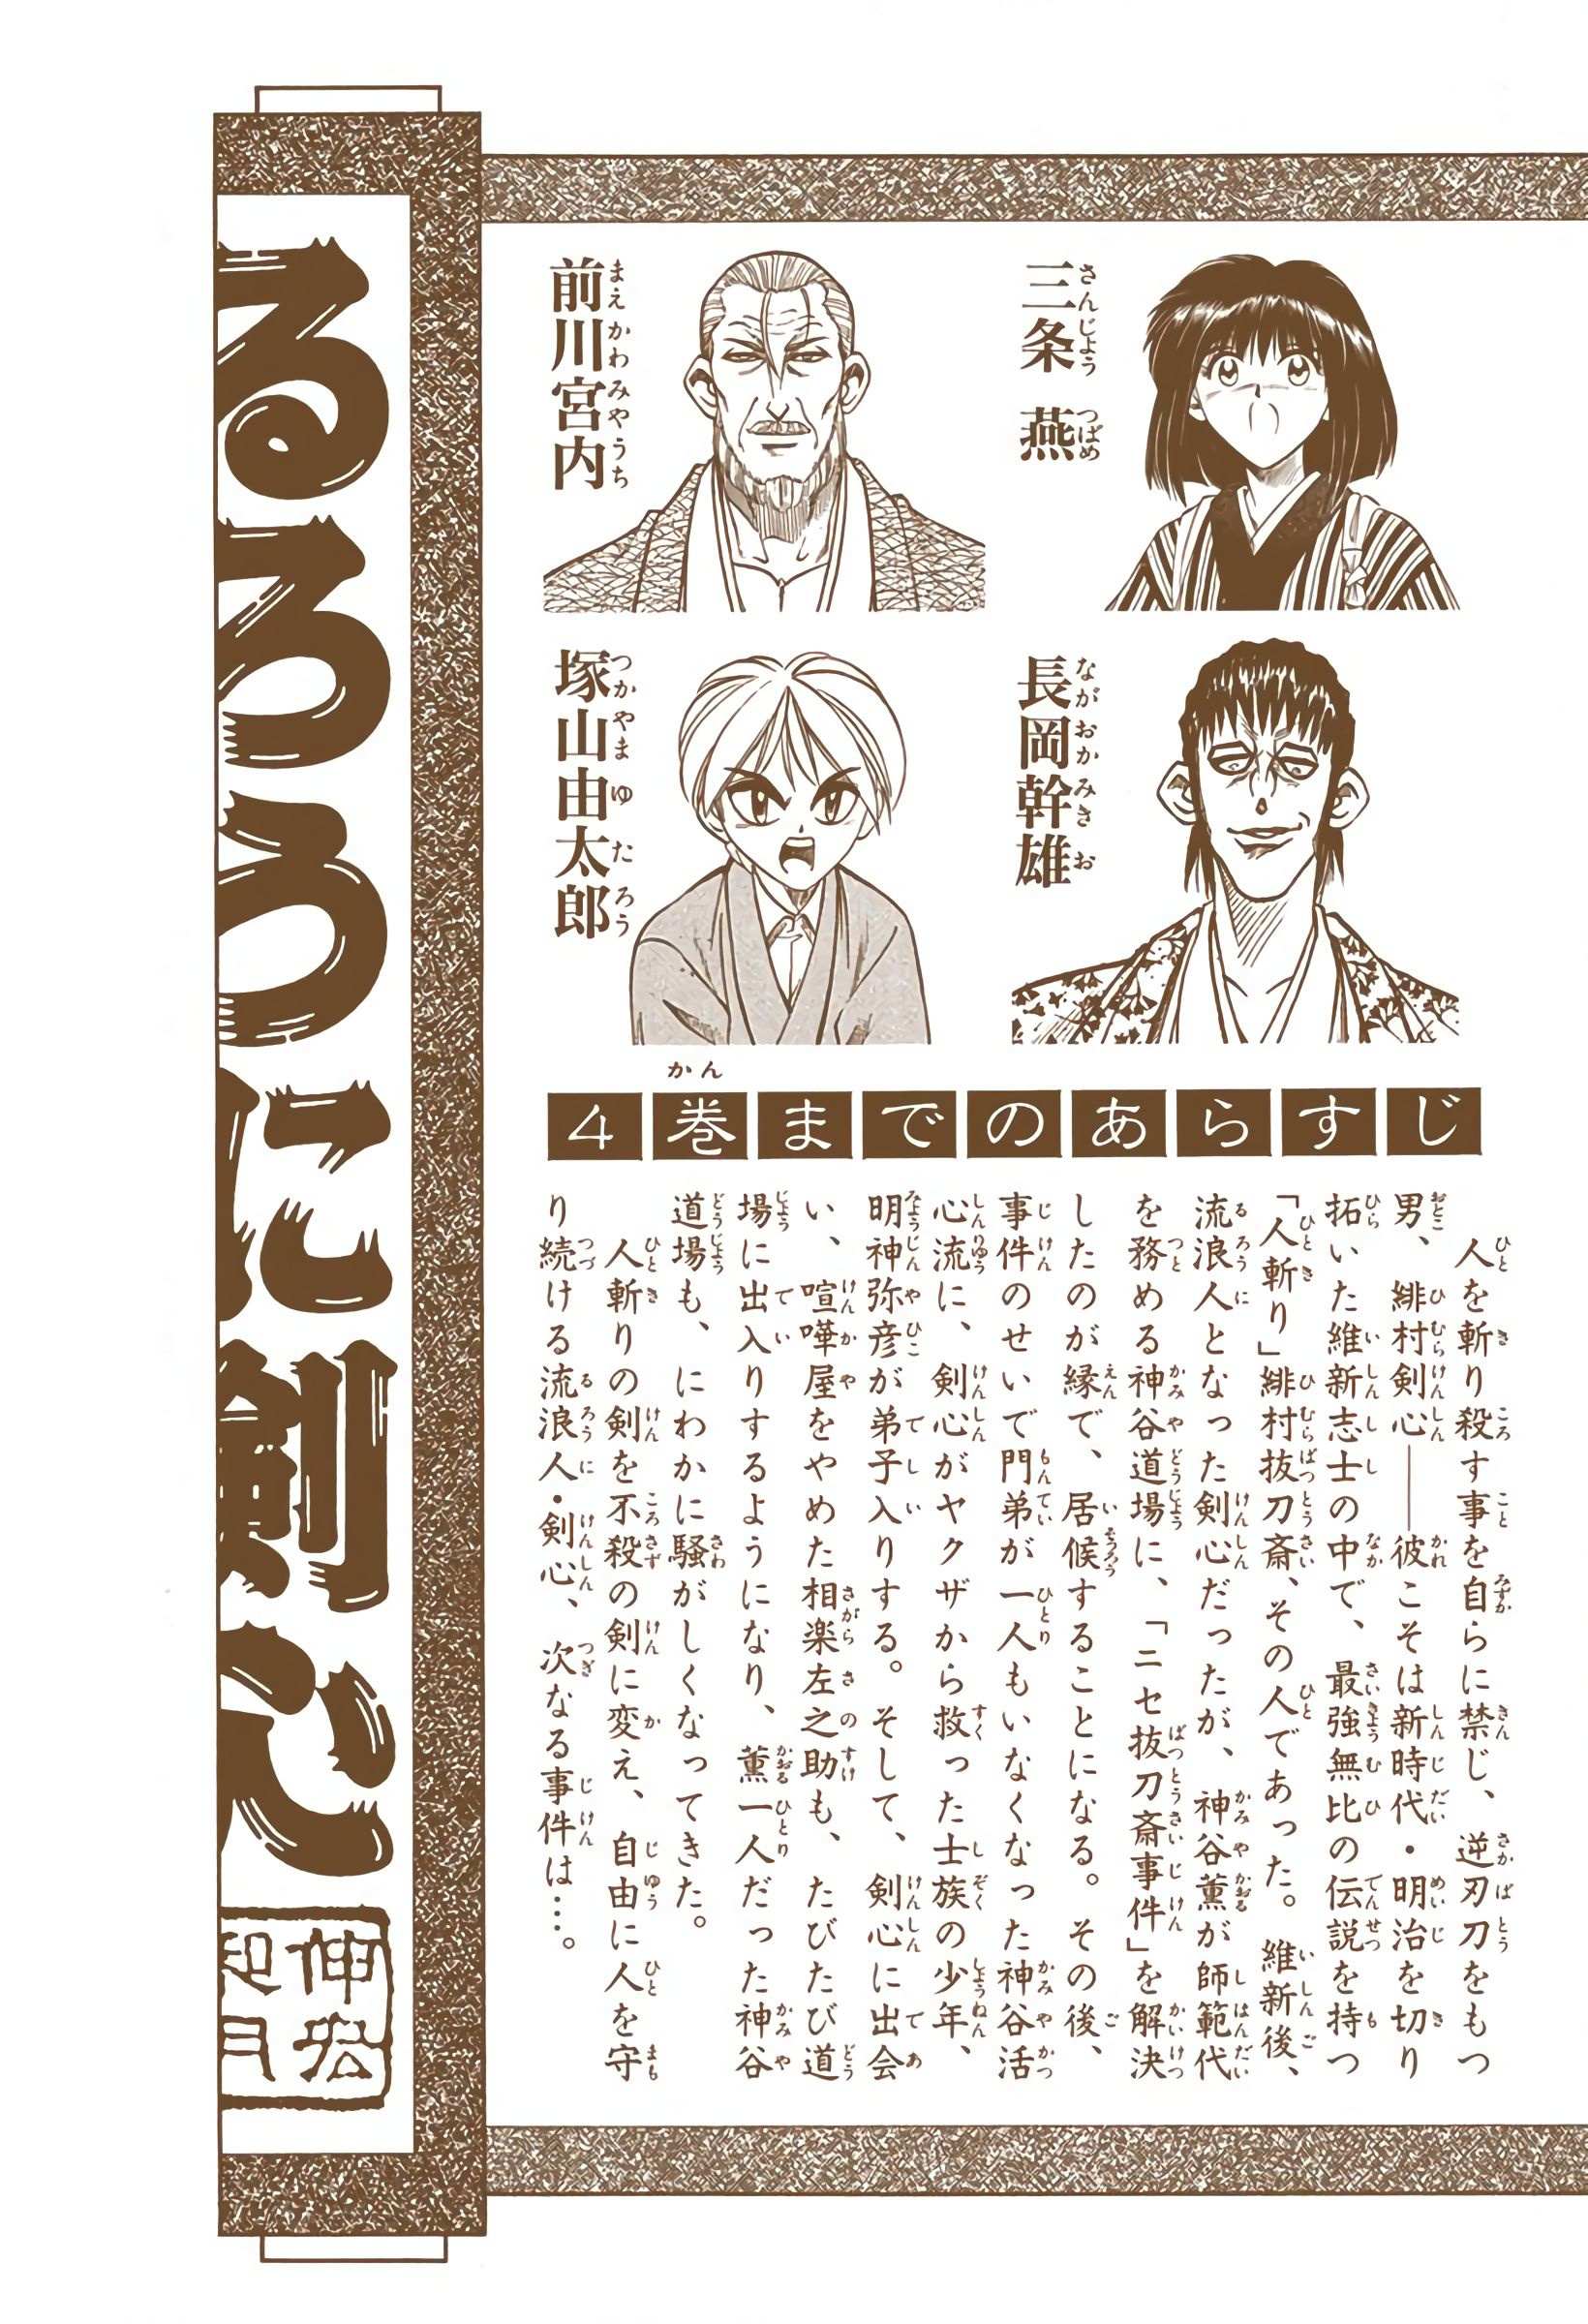 Rurouni Kenshin: Meiji Kenkaku Romantan - Digital Colored - chapter 31 - #6